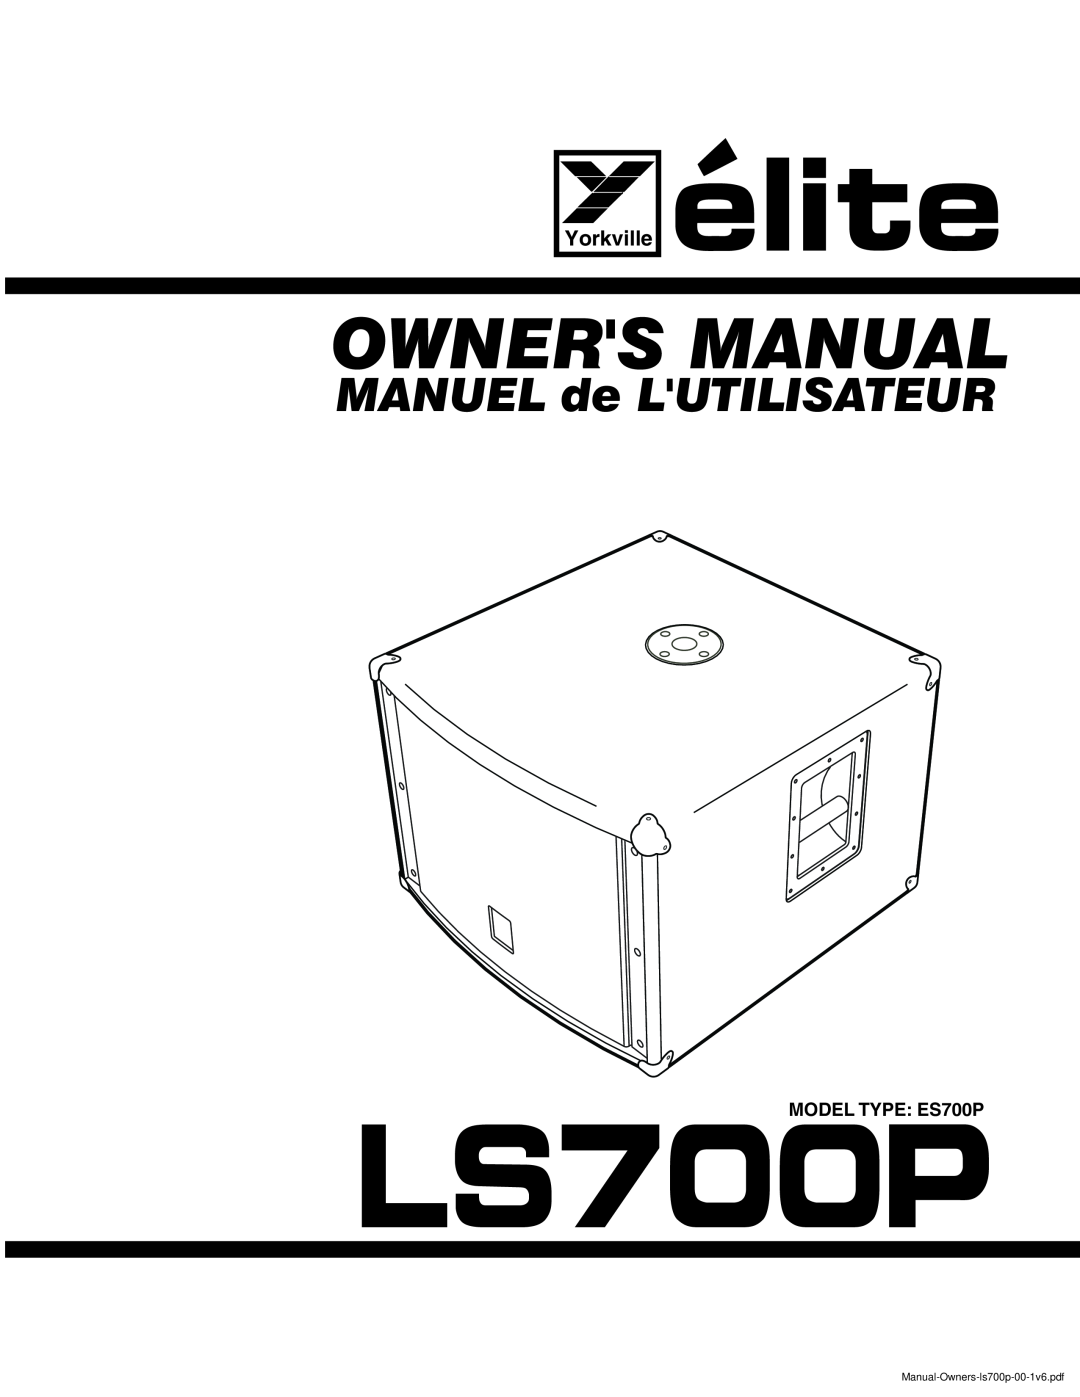 Elite ES700P owner manual LS700PMODEL TYPE ES700, MANUEL de LUTILISATEUR, Yorkville 